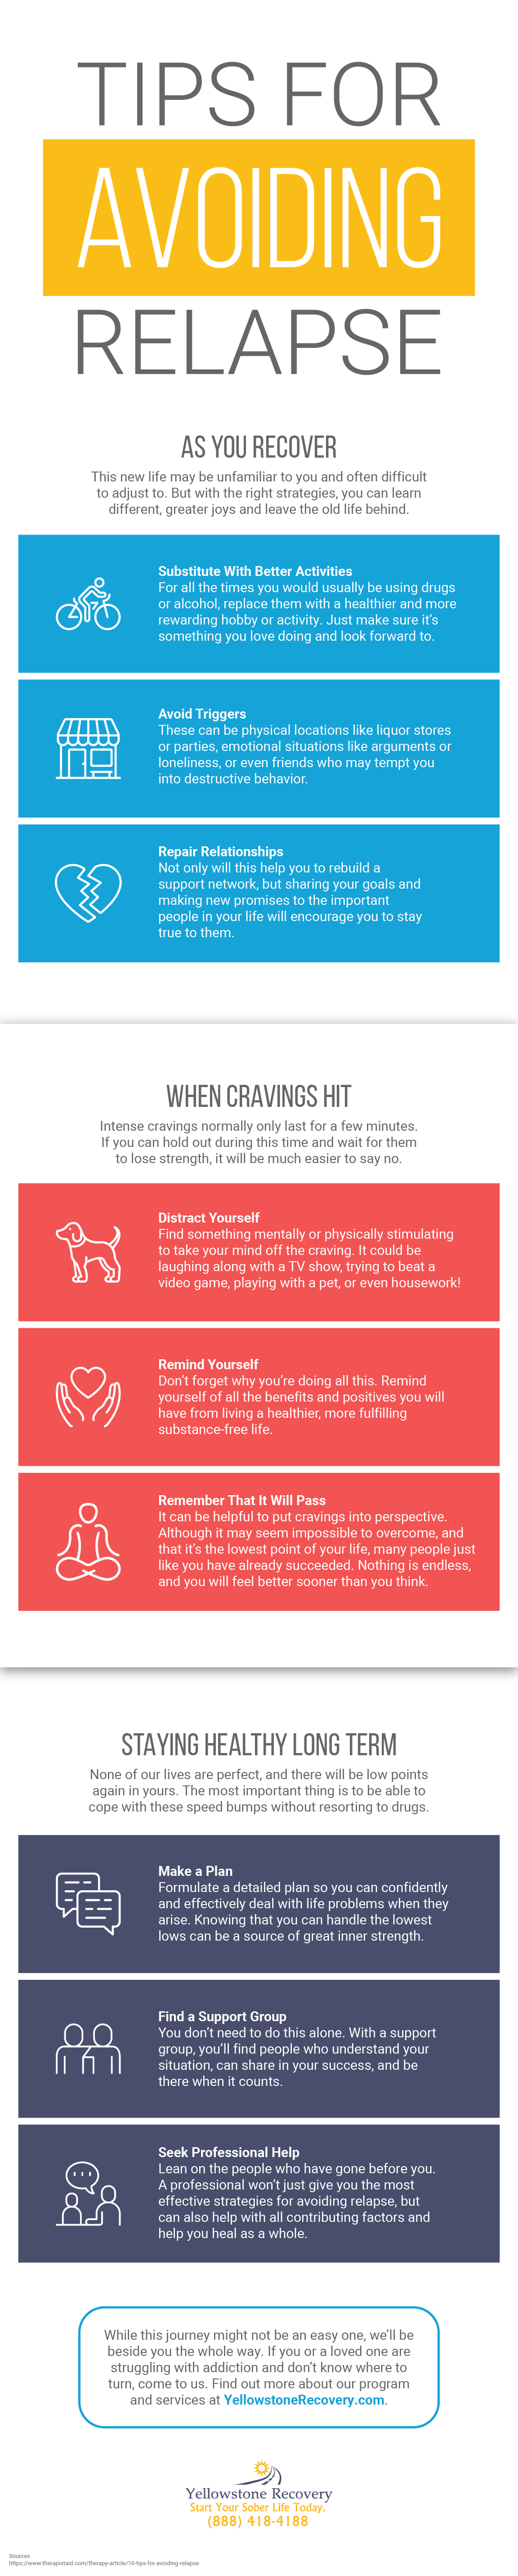 Tips for Avoiding Relapse (Infographic)